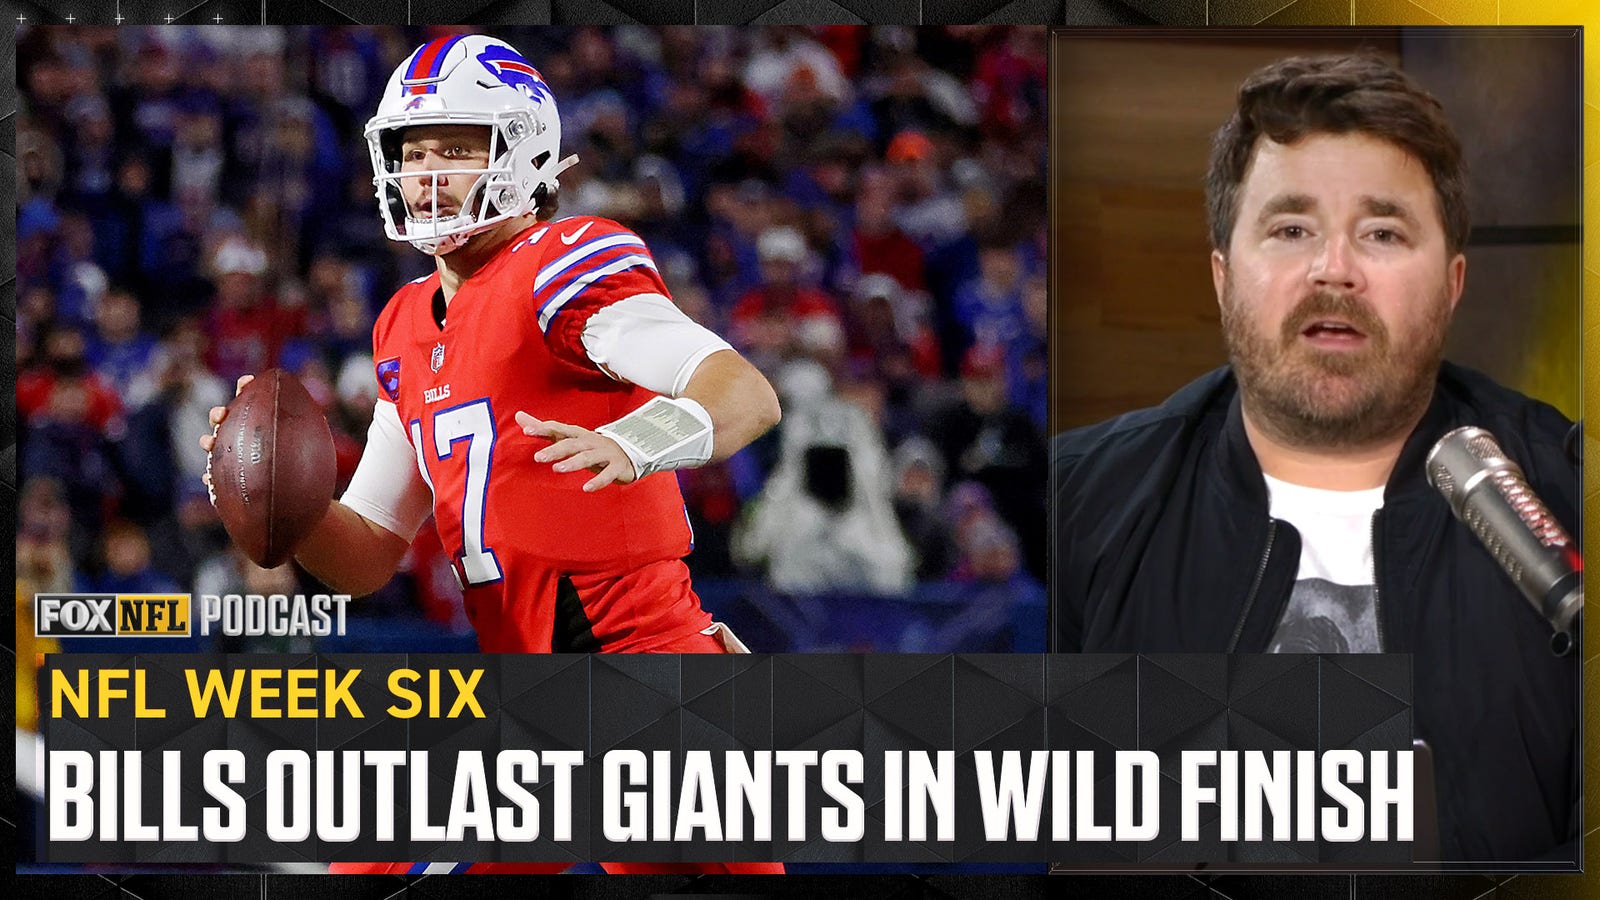 Bills outlast Giants in WILD finish on Sunday night